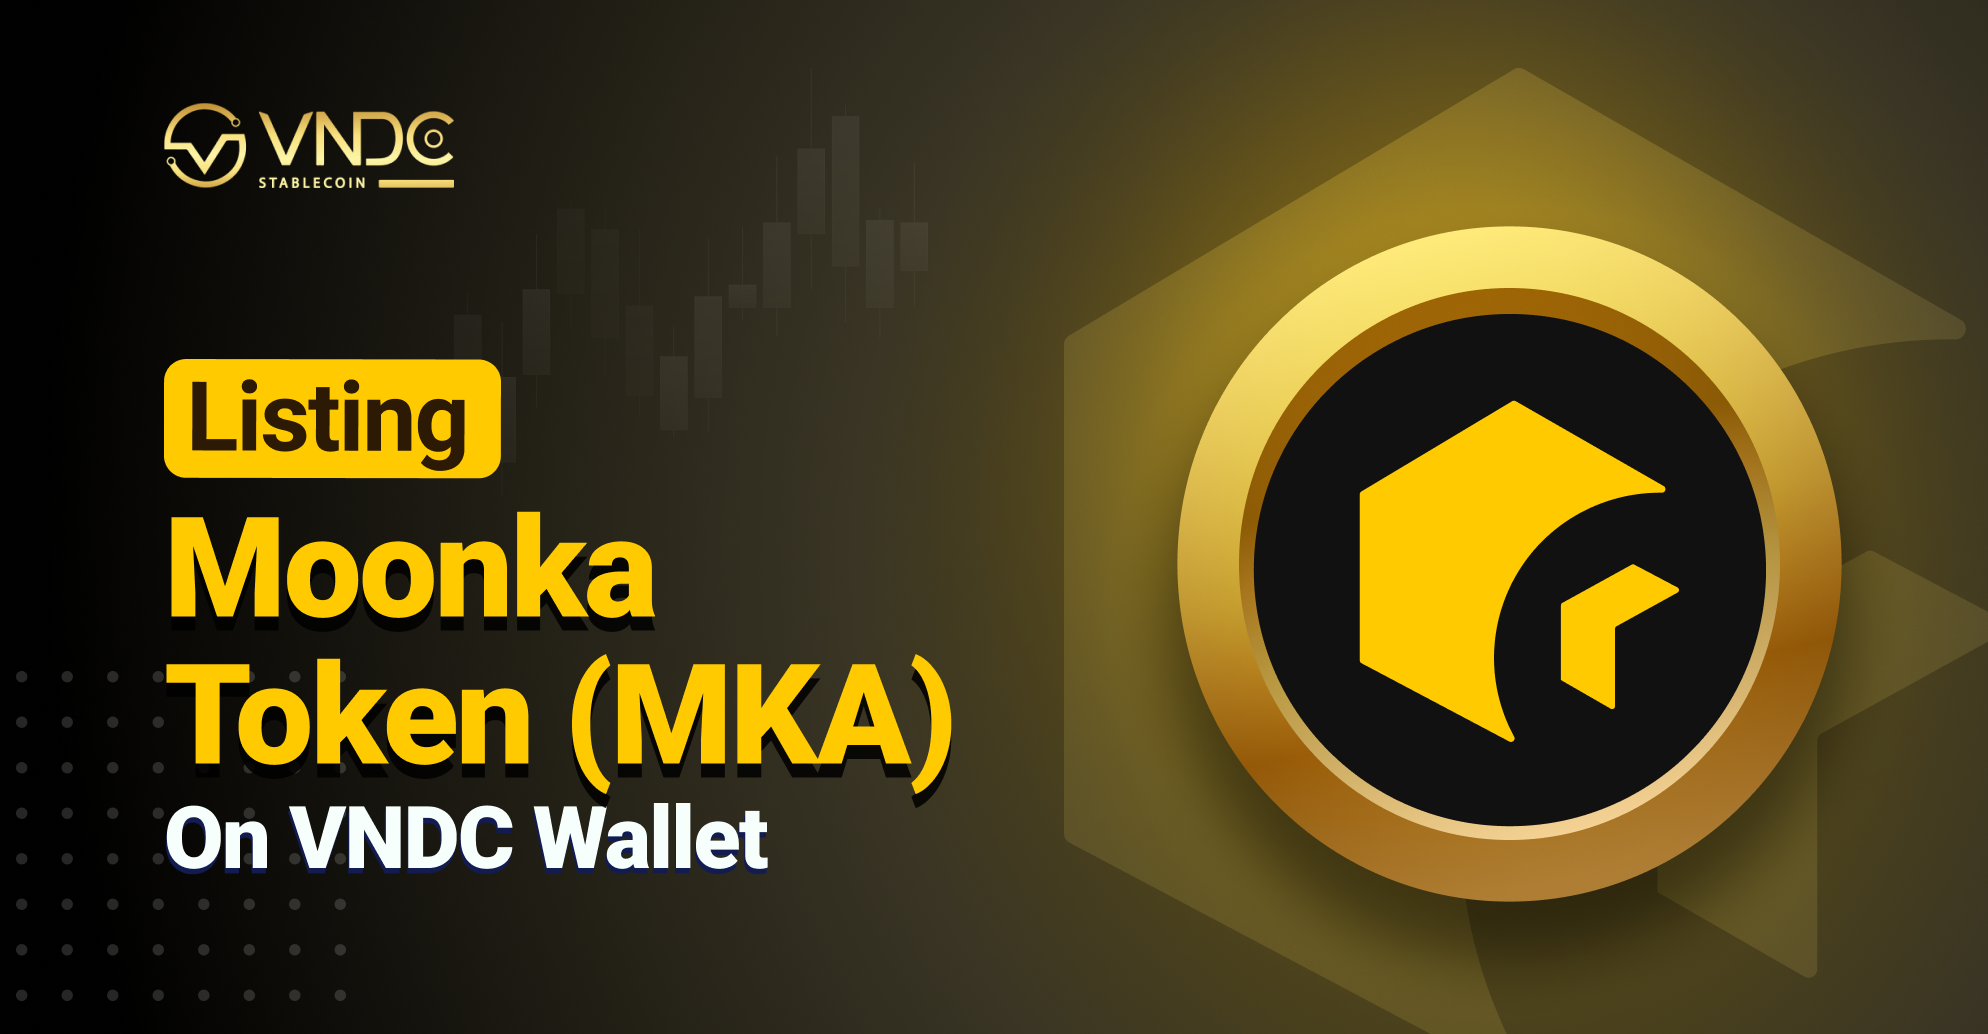 Listing Moonka Token (MKA) on VNDC Wallet